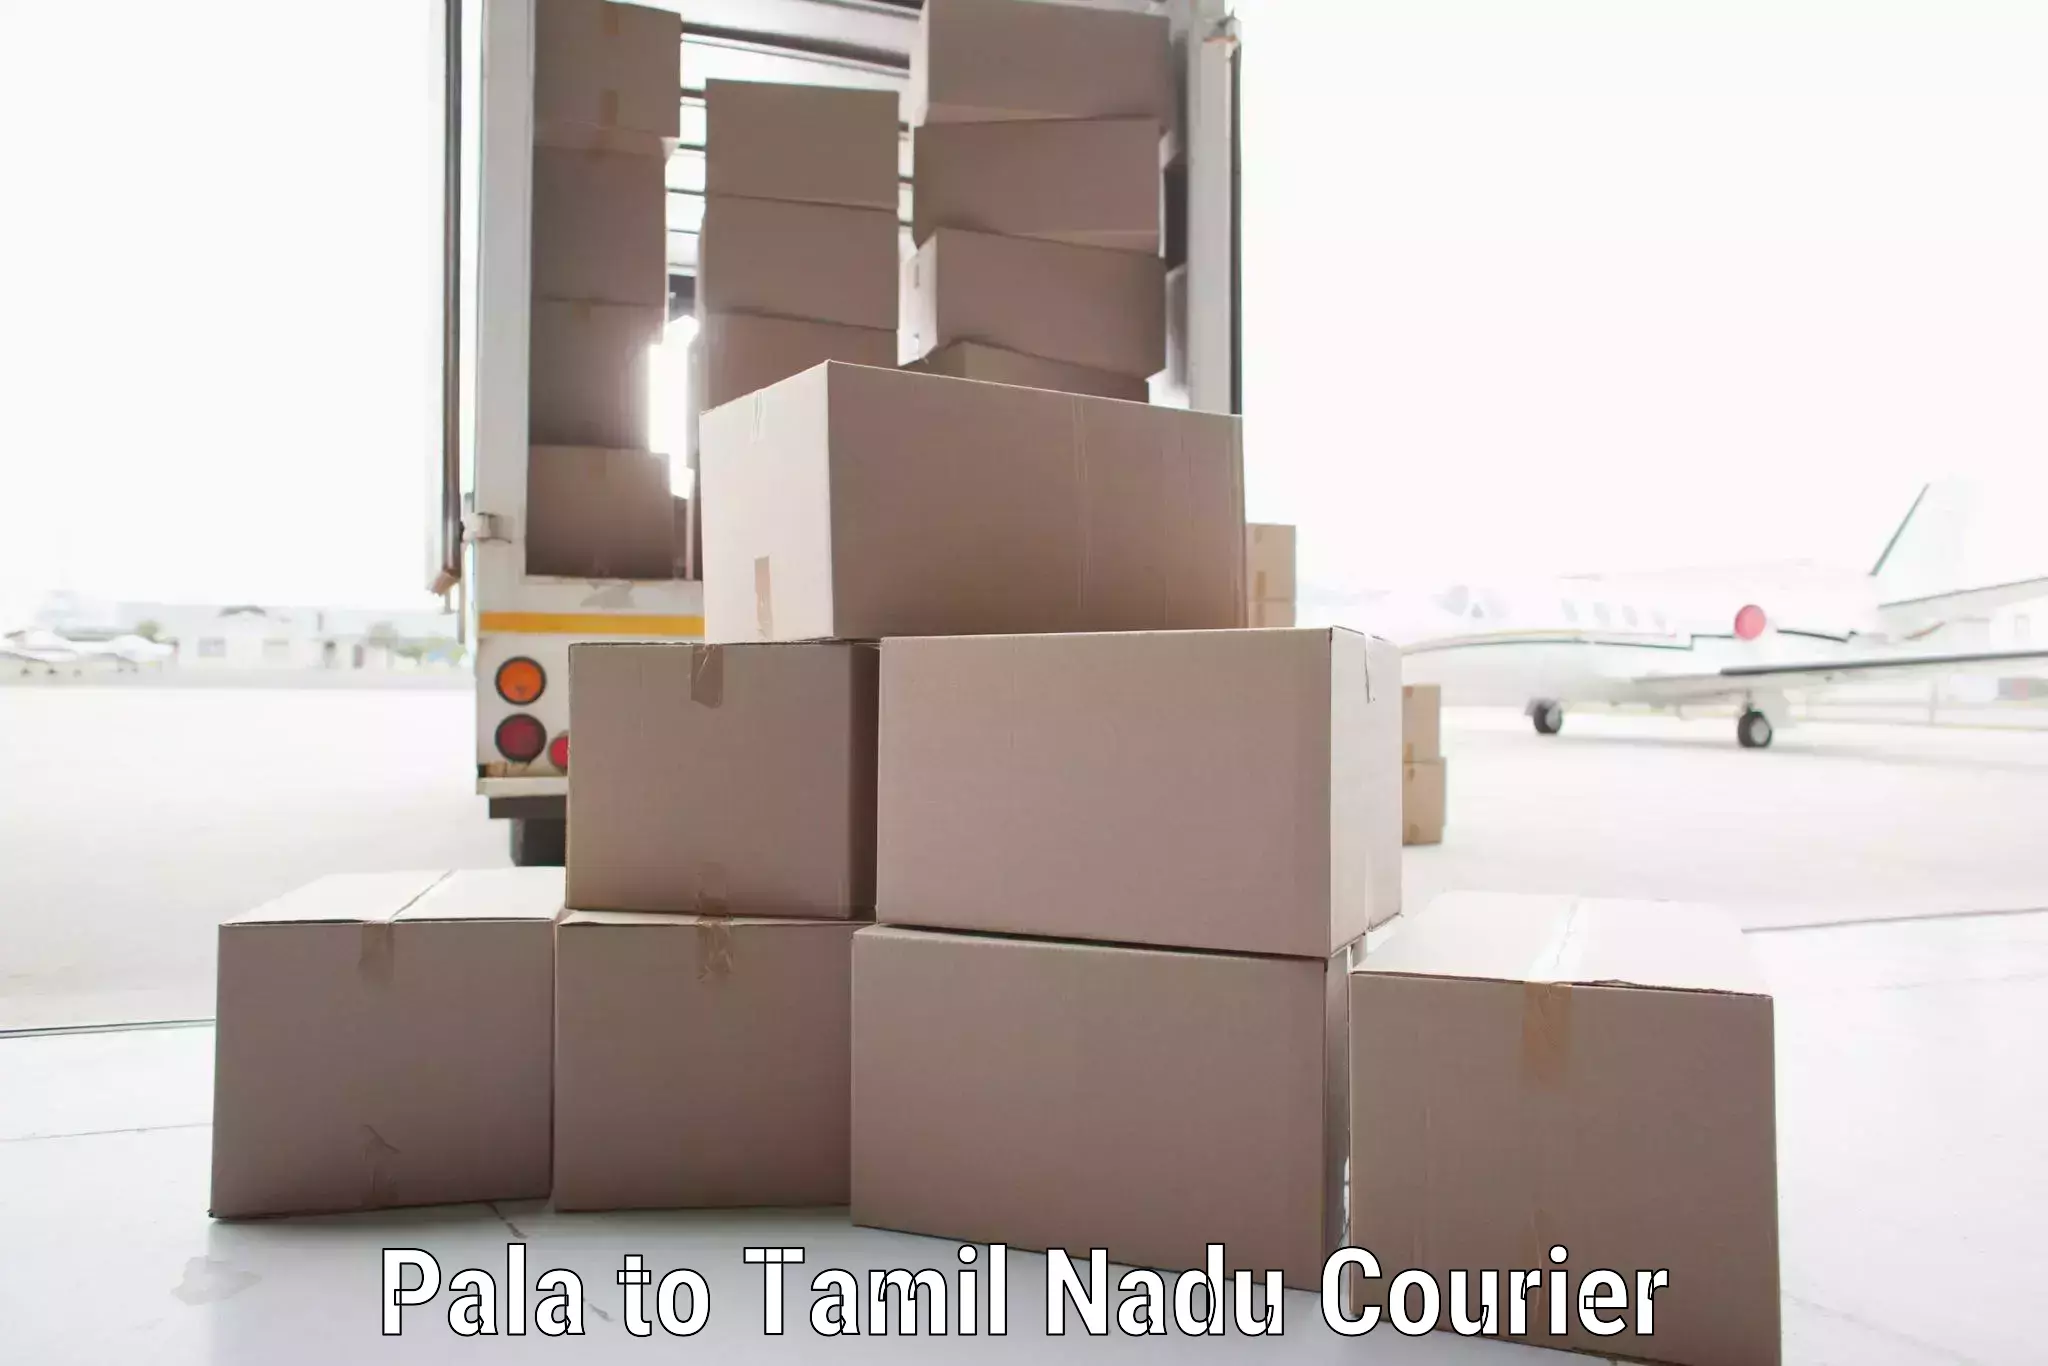 Efficient freight transportation Pala to Rathinasabapathy Puram